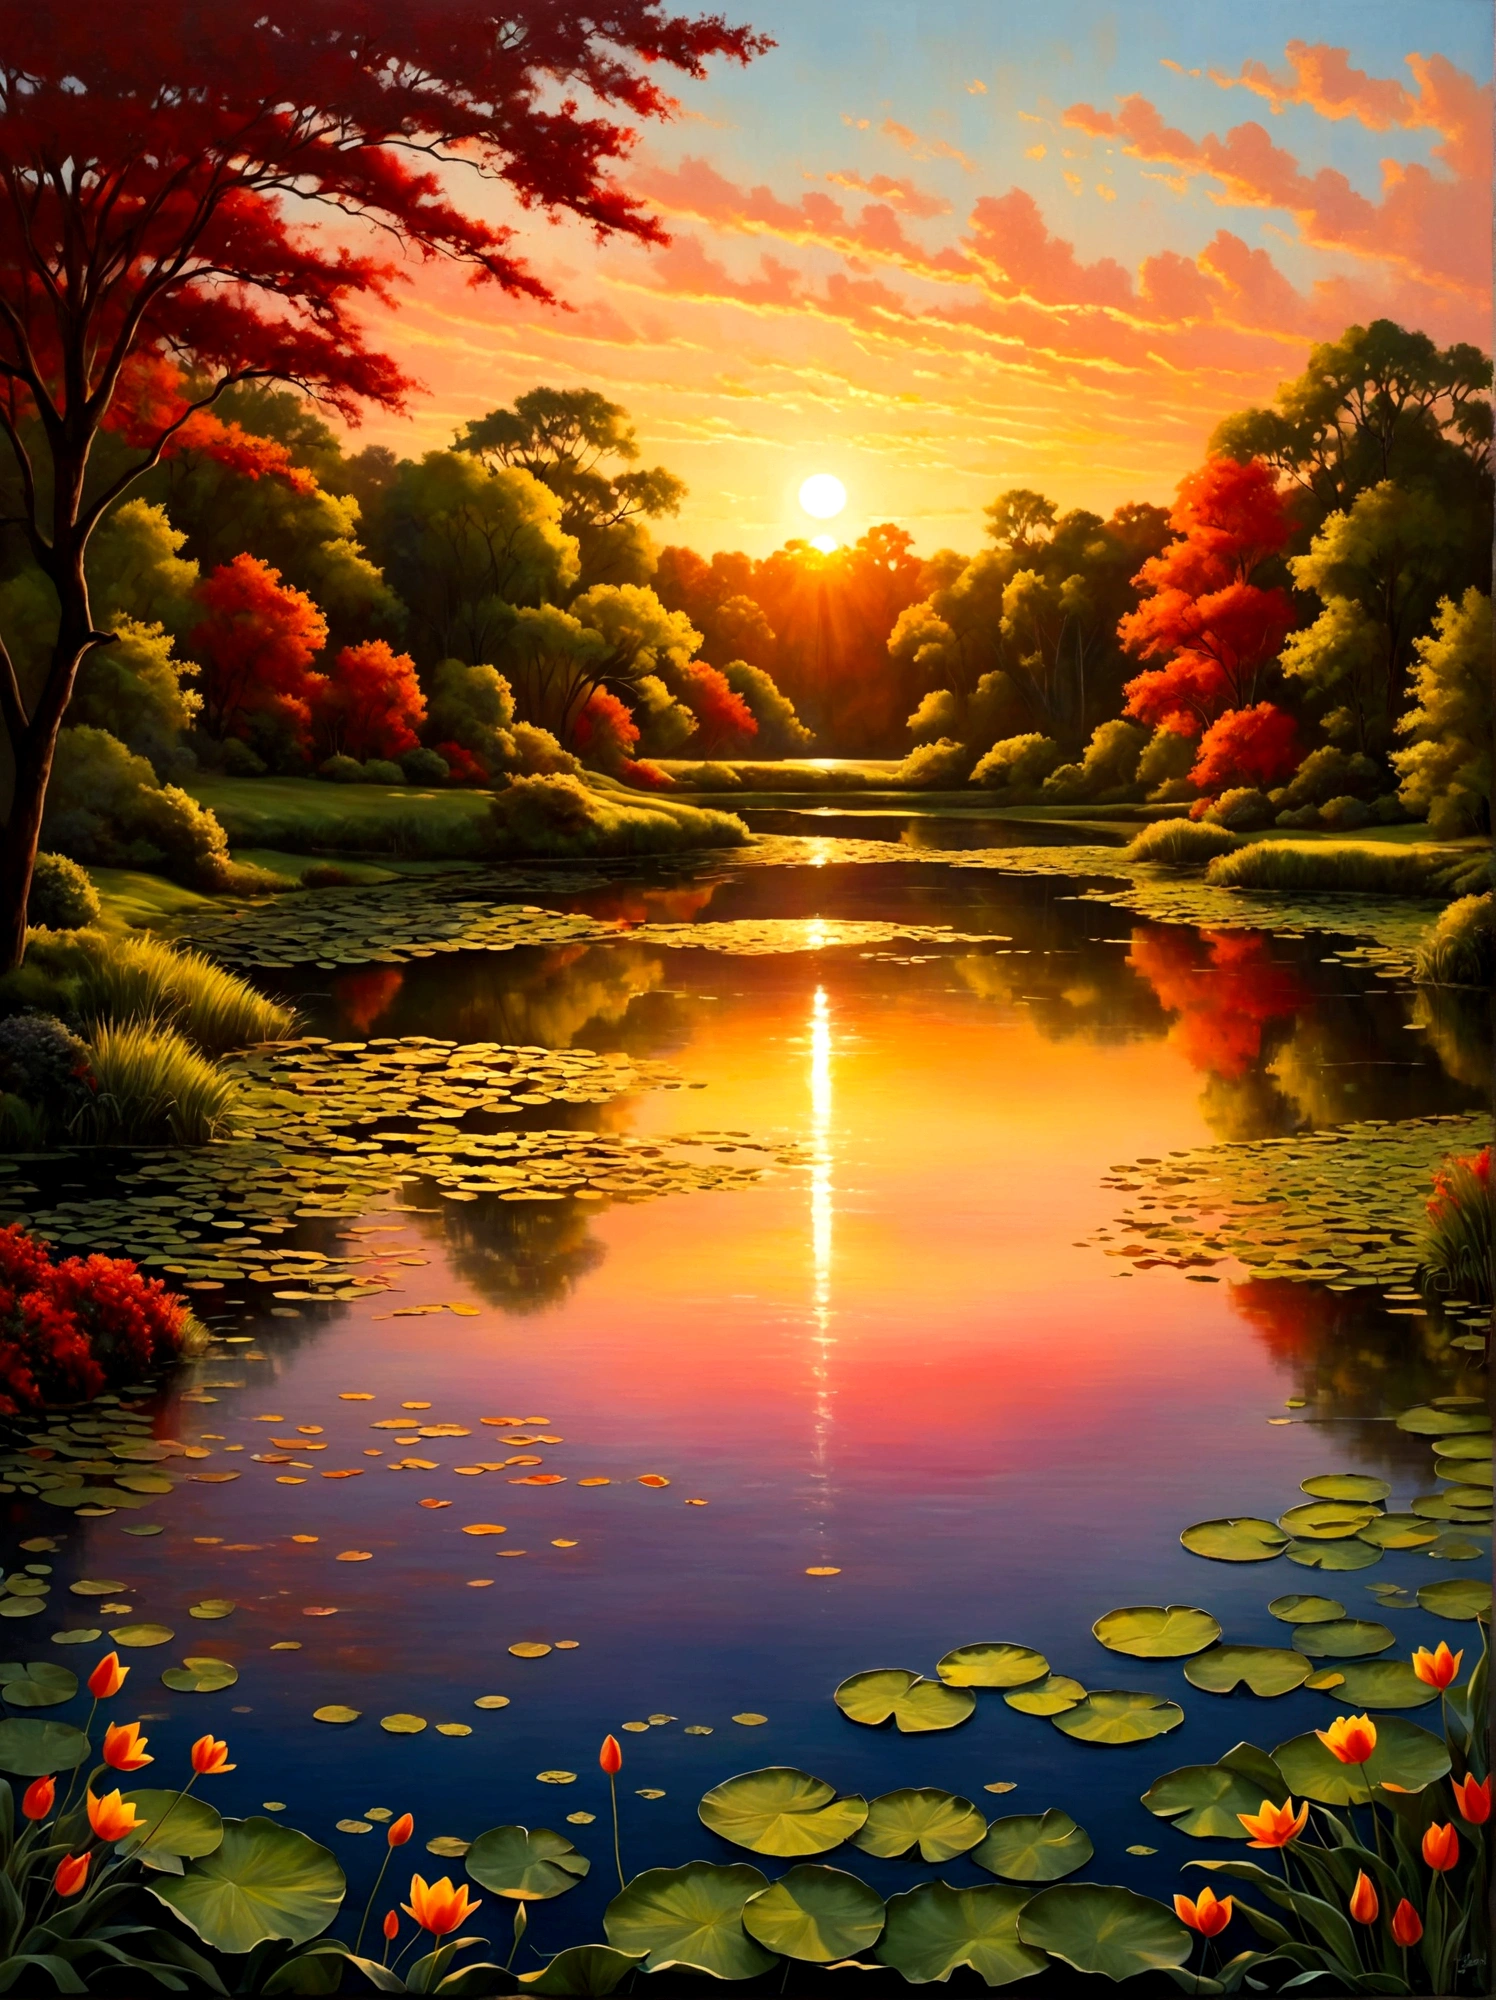 (日出時間:1.6)，風景如畫的清晨場景，日出的光芒灑滿天空. 太陽的光芒剛從地平線探出頭來, 投射出充滿活力的橙色色調, 紅色的, 黃色的, 和粉紅色. 在前台, 寧靜的湖面倒映著天空的絢麗色彩. 它平靜的表面幾乎沒有受到干擾, 除了一些為場景增添魅力的微妙漣漪. 湖的周圍樹木茂盛，綠意盎然, 由於黑暗的消退，仍然籠罩在陰影中，但開始捕捉破曉的活潑光芒. 這張影像捕捉了從夜晚到黎明的美麗過渡, 該視角是廣角視圖，強調充滿自然元素的令人驚嘆的景觀的廣闊範圍, 影像應透過有效利用光影來喚起戲劇性和規模感.